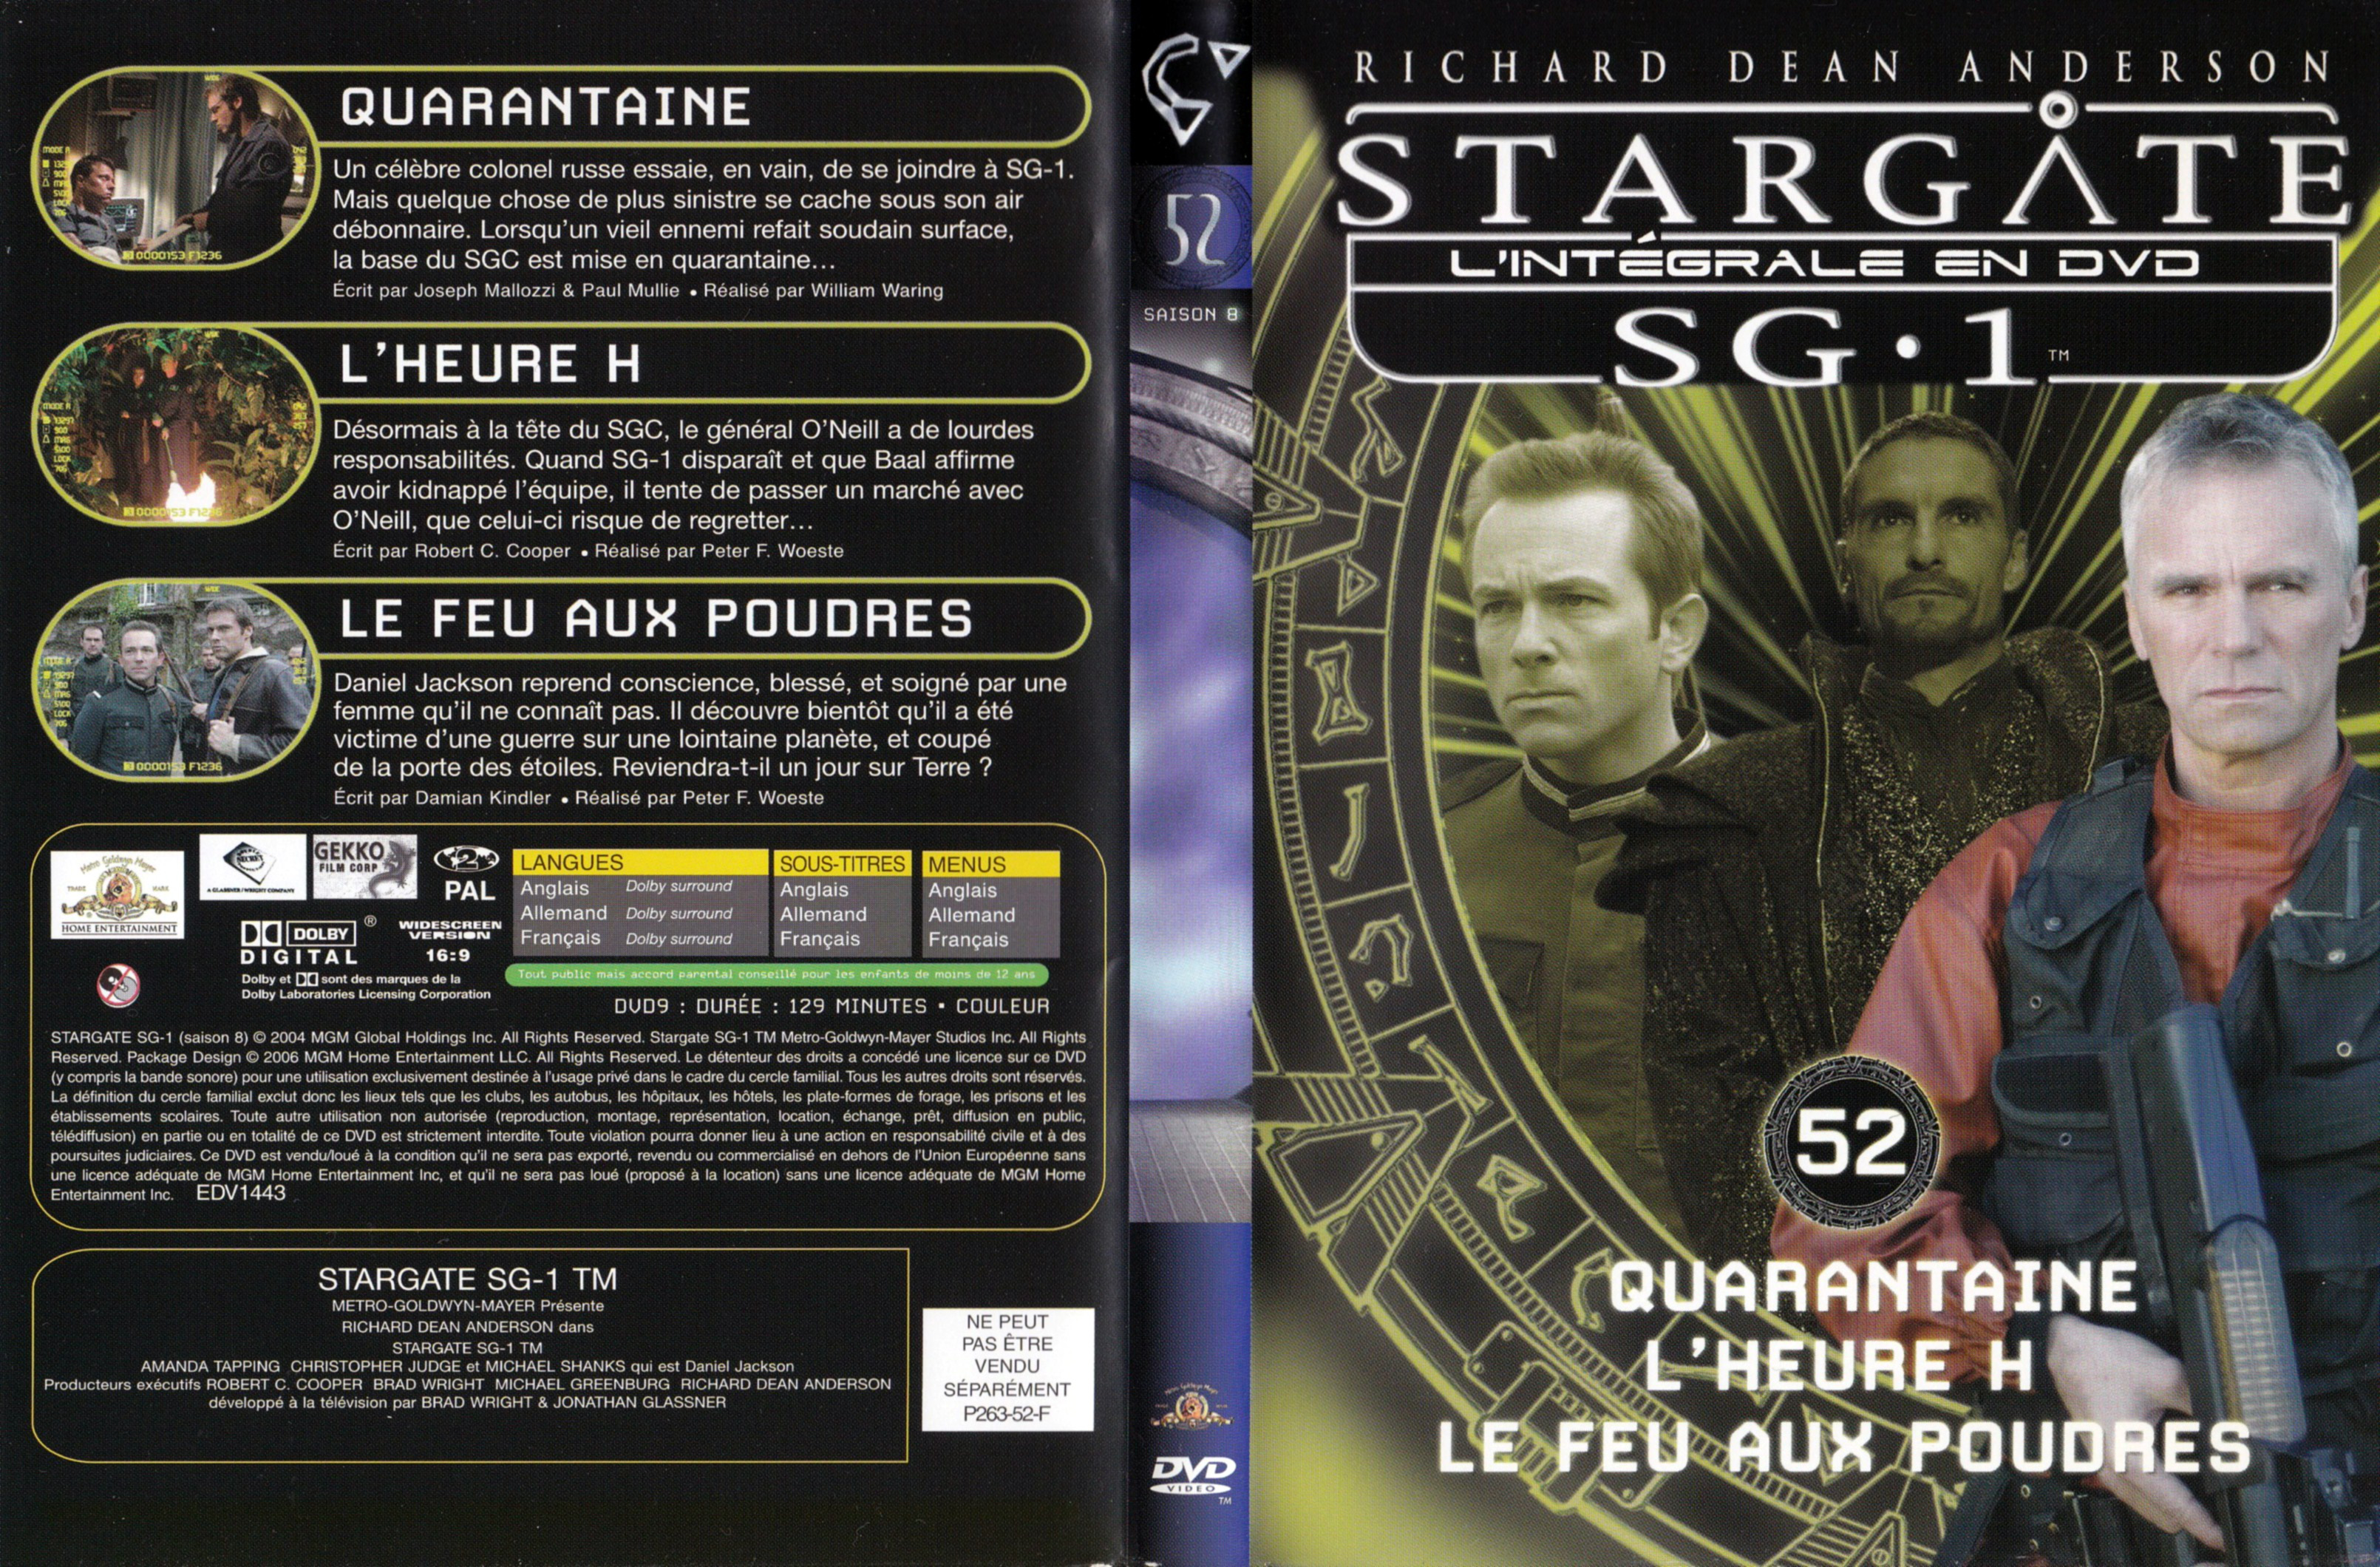 Jaquette DVD Stargate SG1 Intgrale Saison 8 vol 52